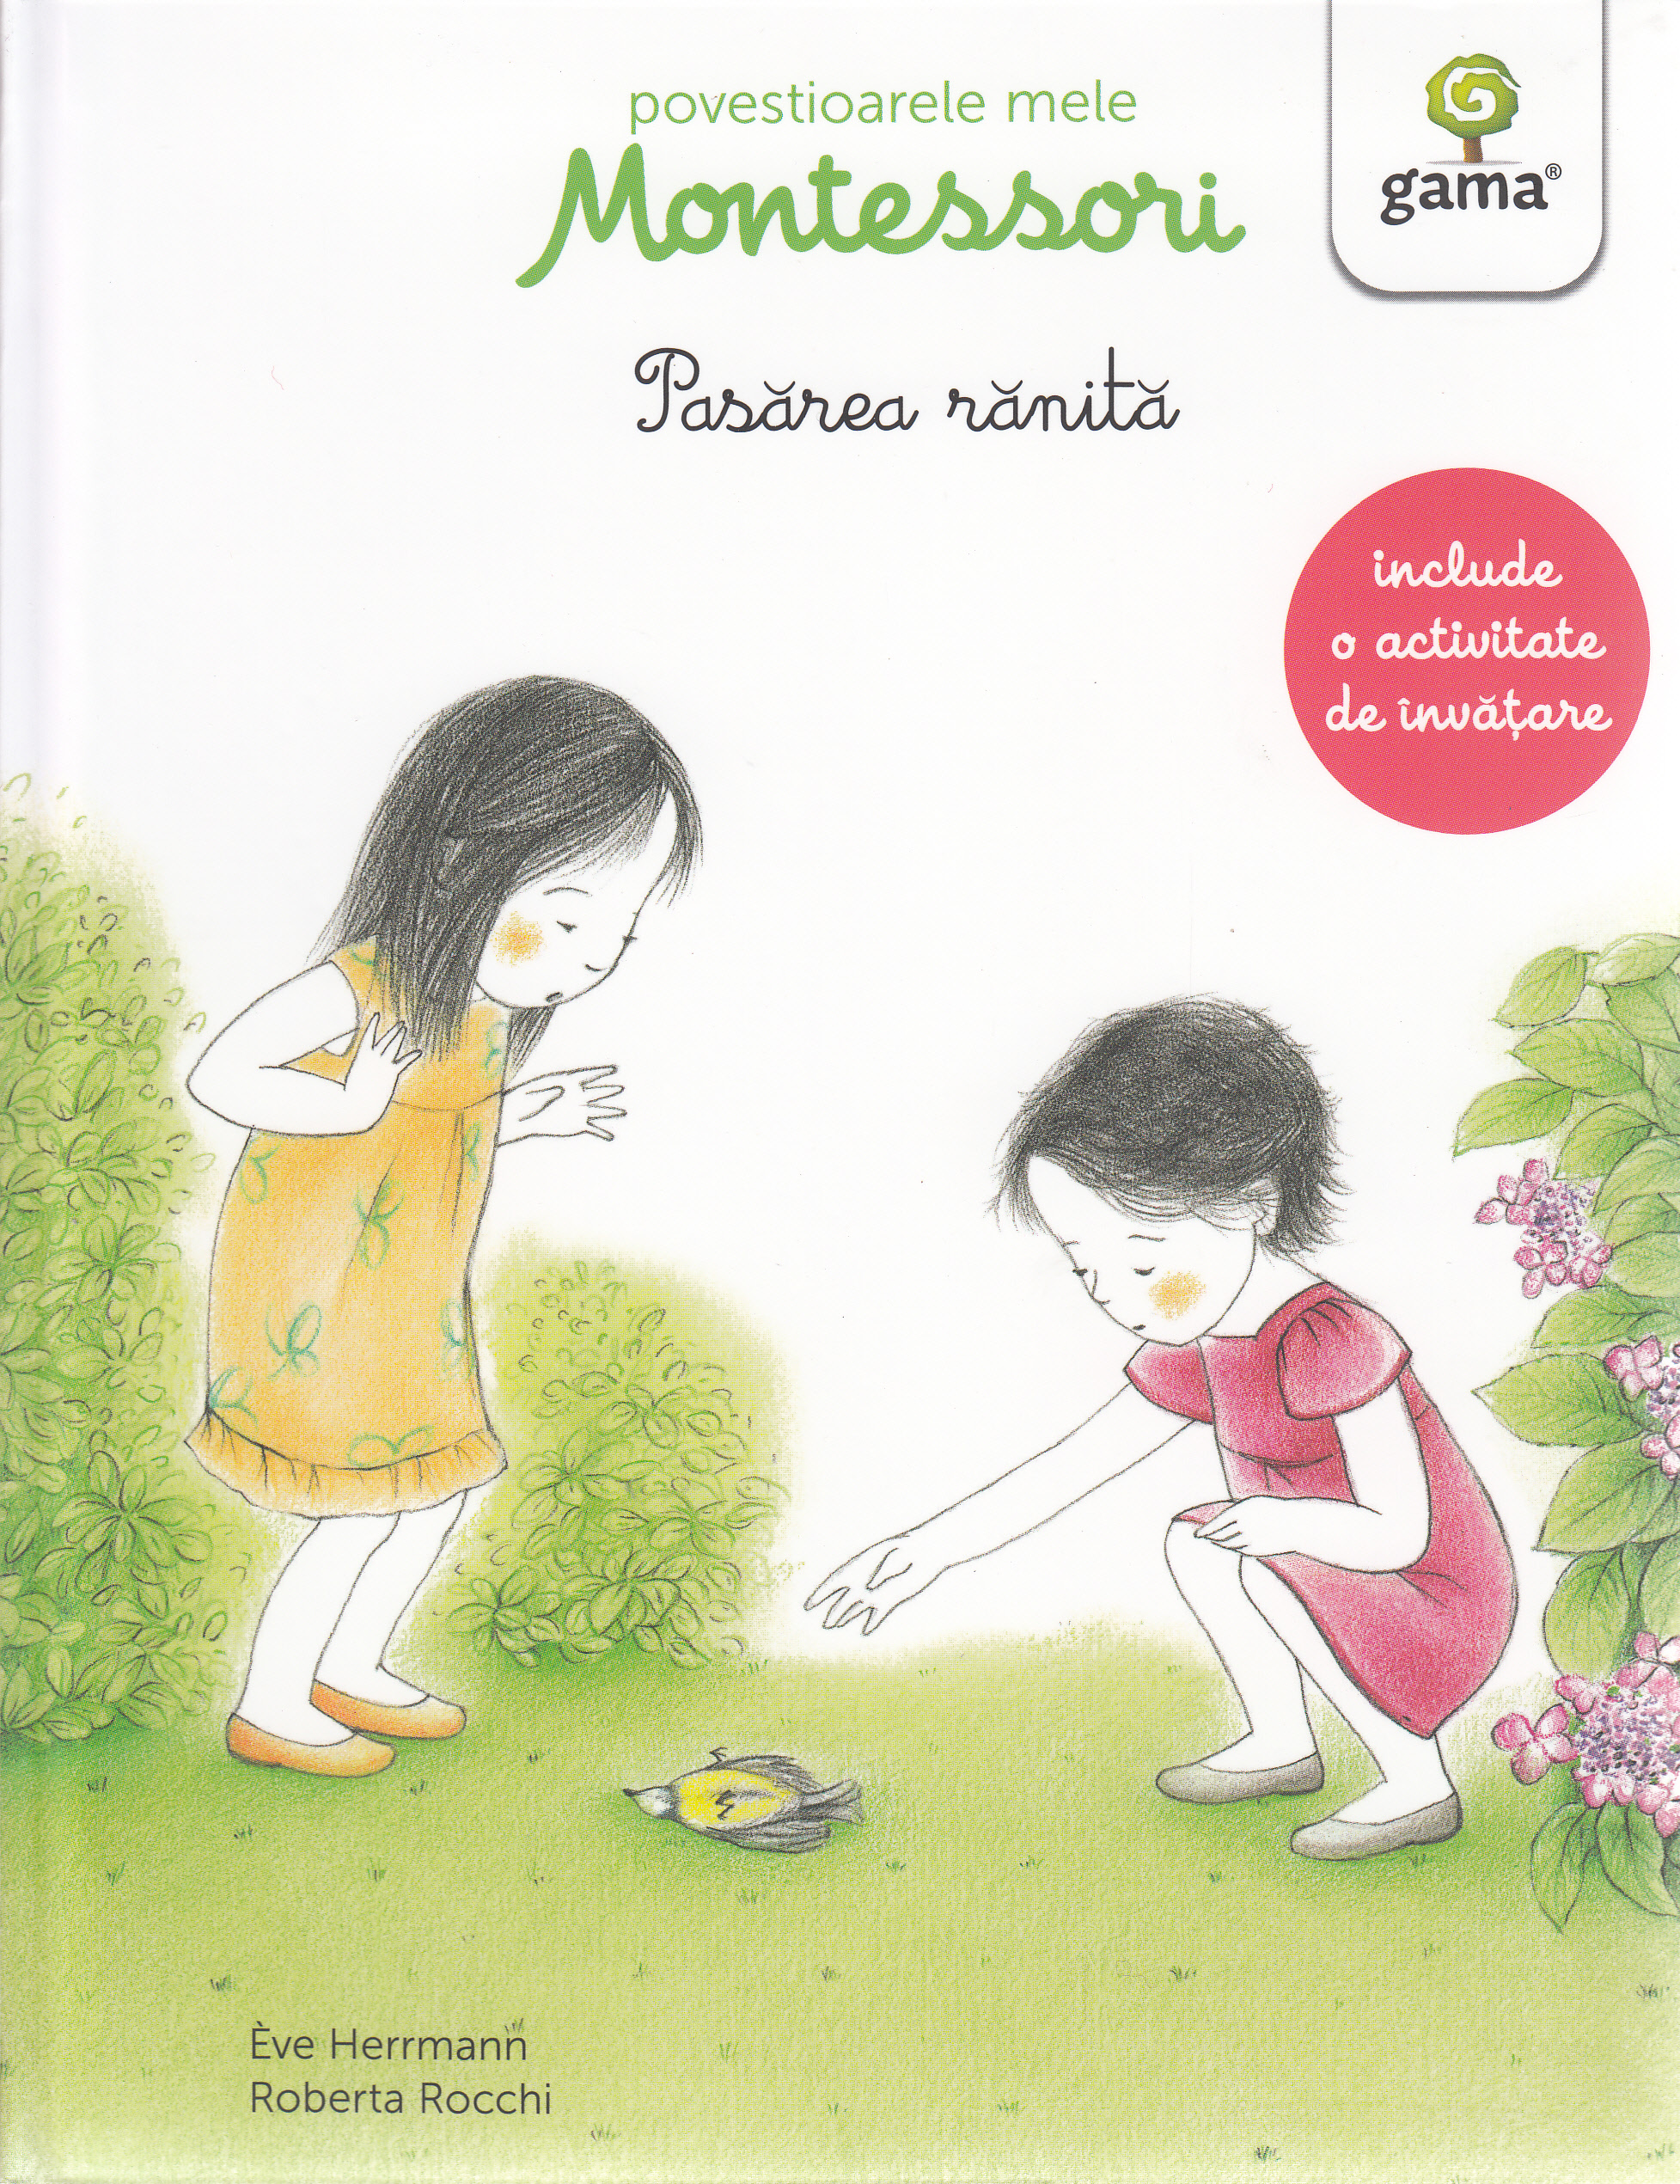 Povestioarele mele Montessori: Pasarea ranita - Eve Herrmann, Roberta Rocchi